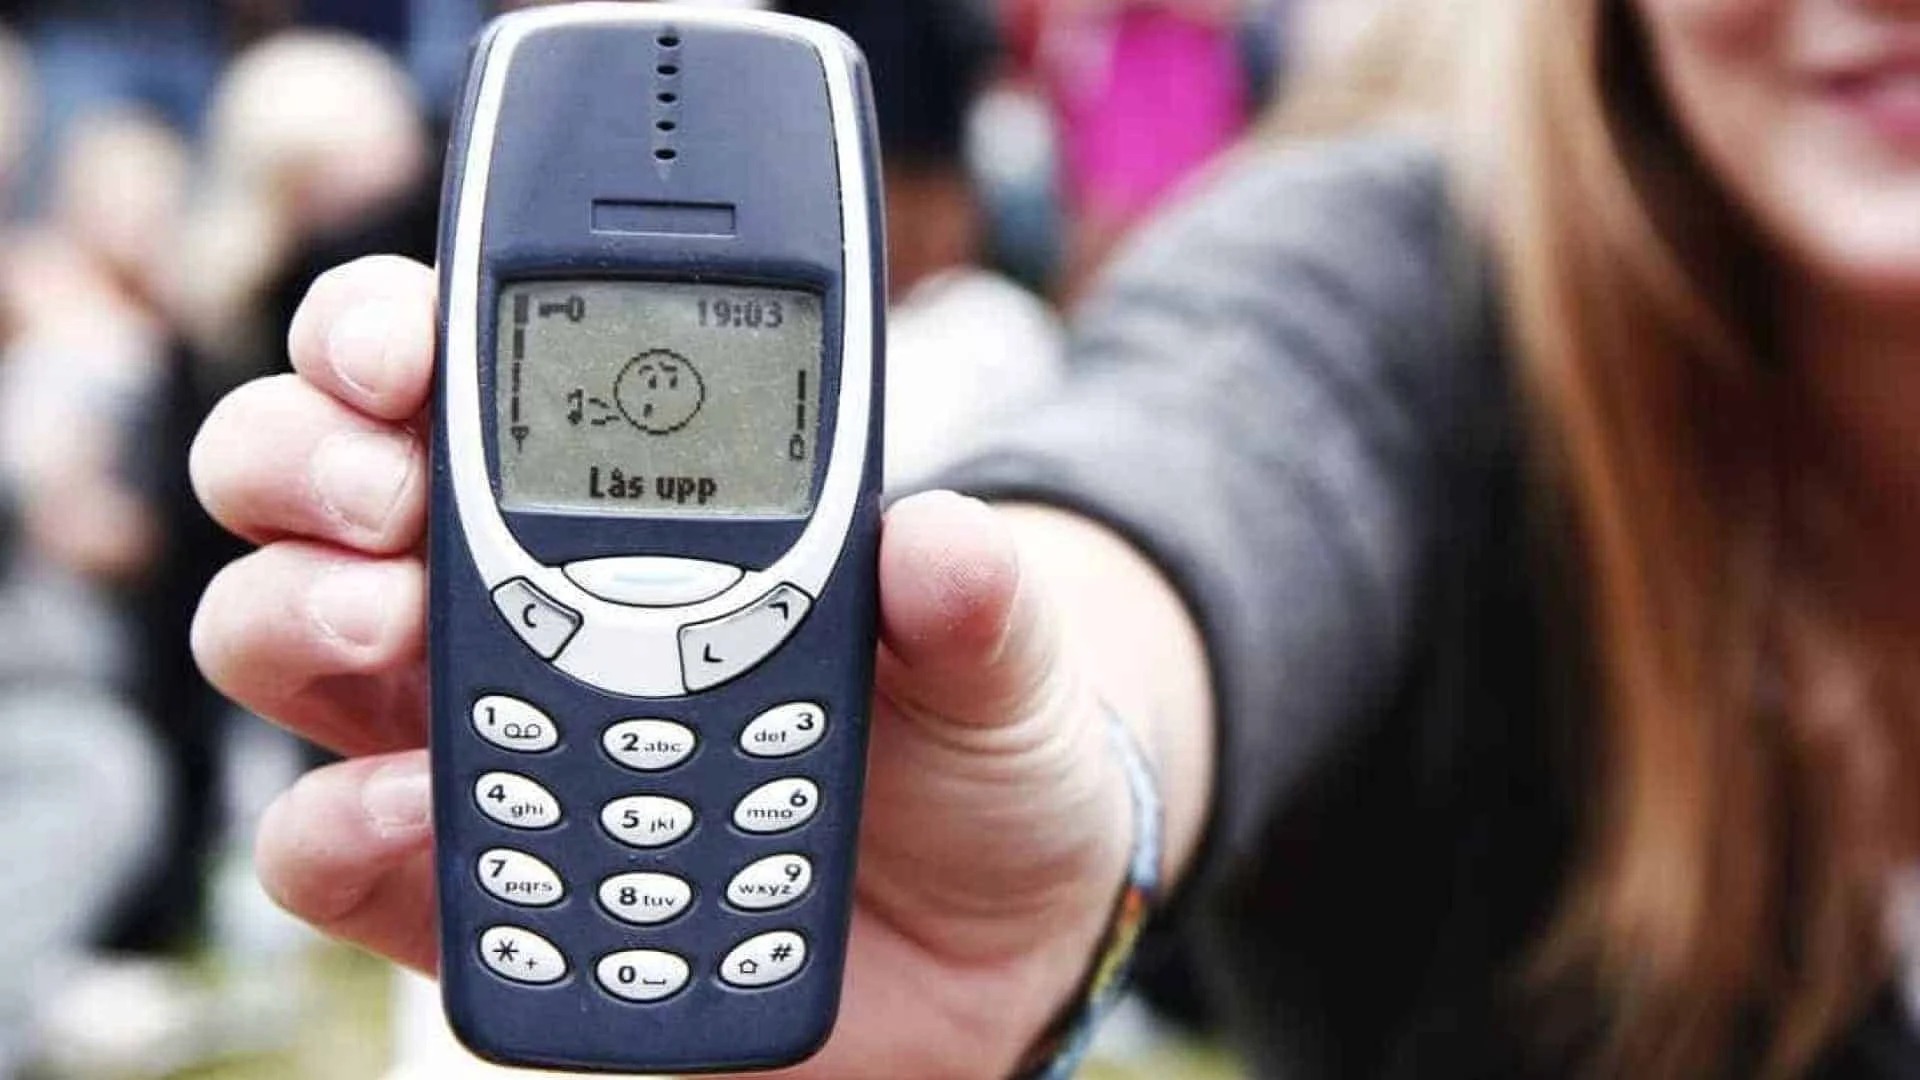 Nokia 3310 Old